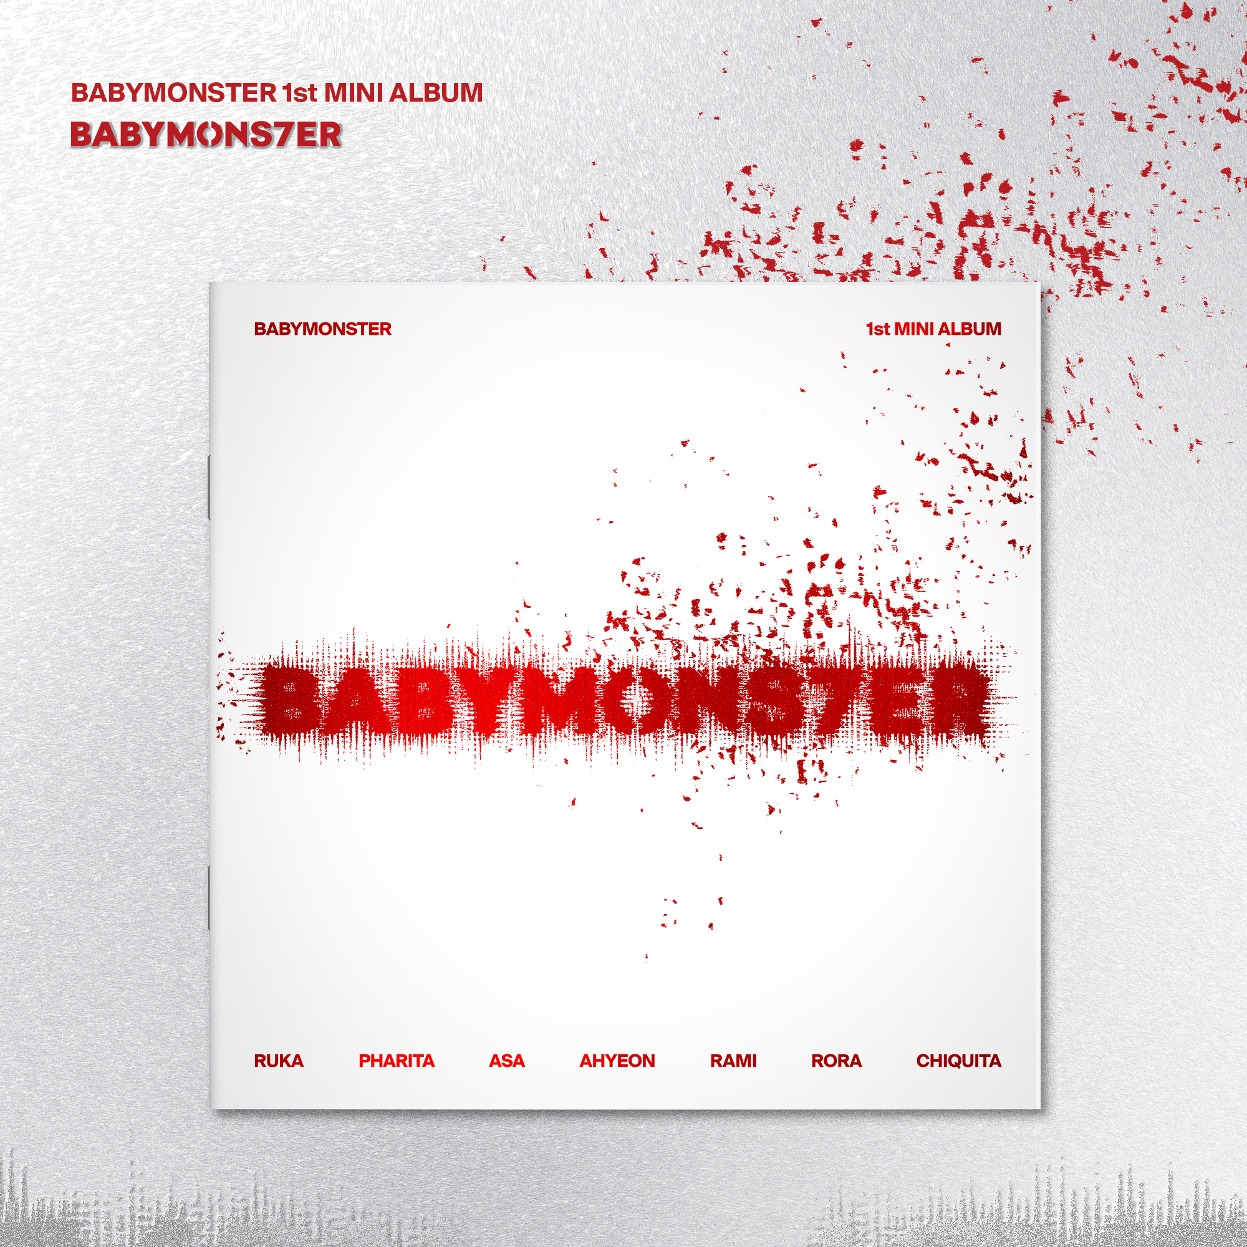 [BABYMONSTER] - 迷你专辑 1辑 [BABYMONS7ER] (PHOTOBOOK VER.)